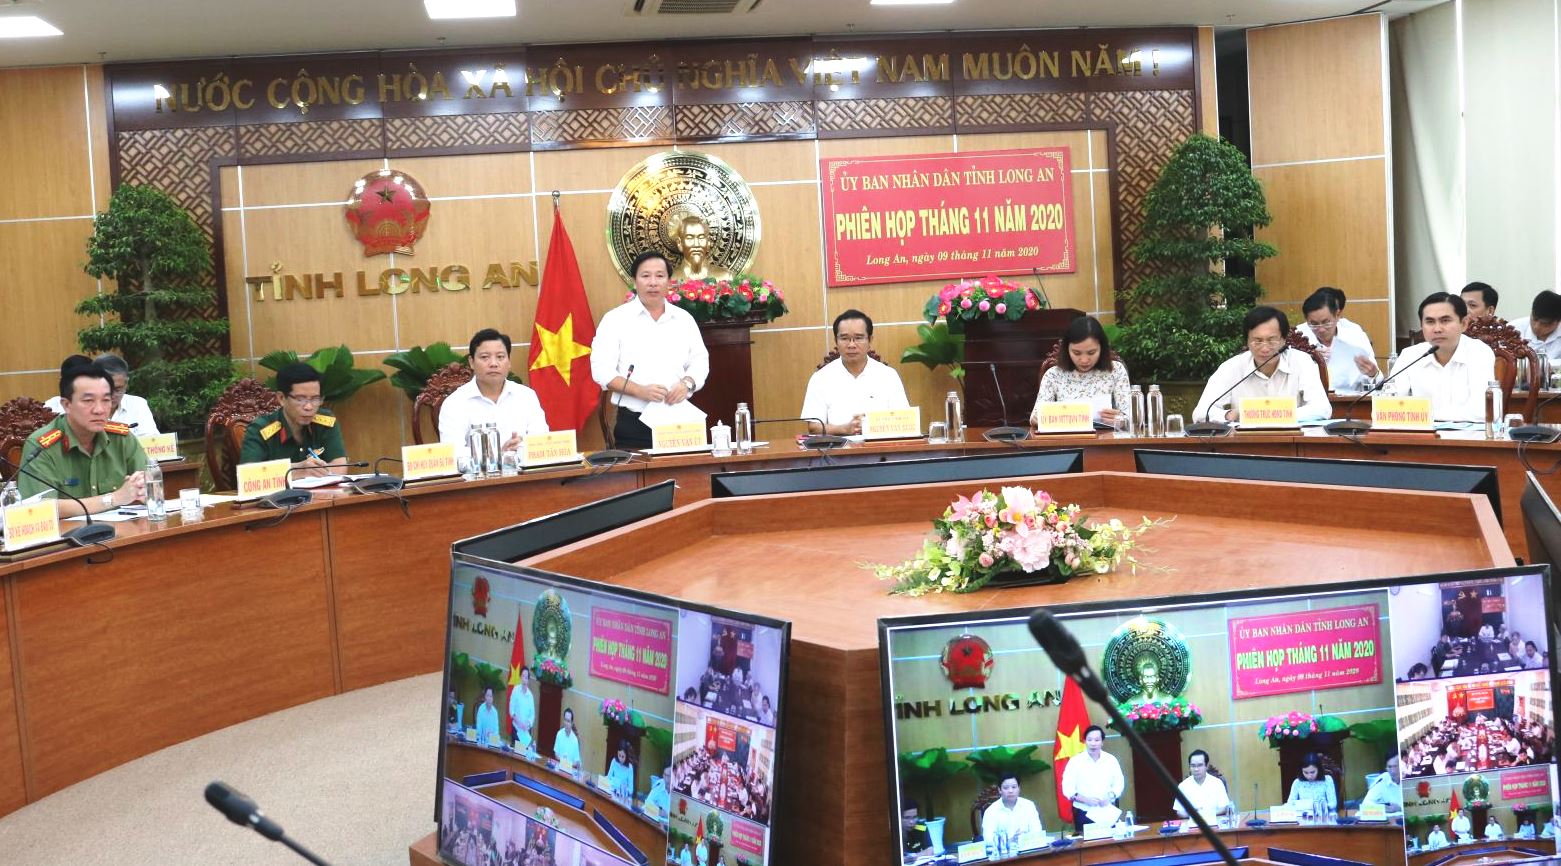 Một cuộc họp trực tuyến của Ủy ban nhân dân tỉnh Long An